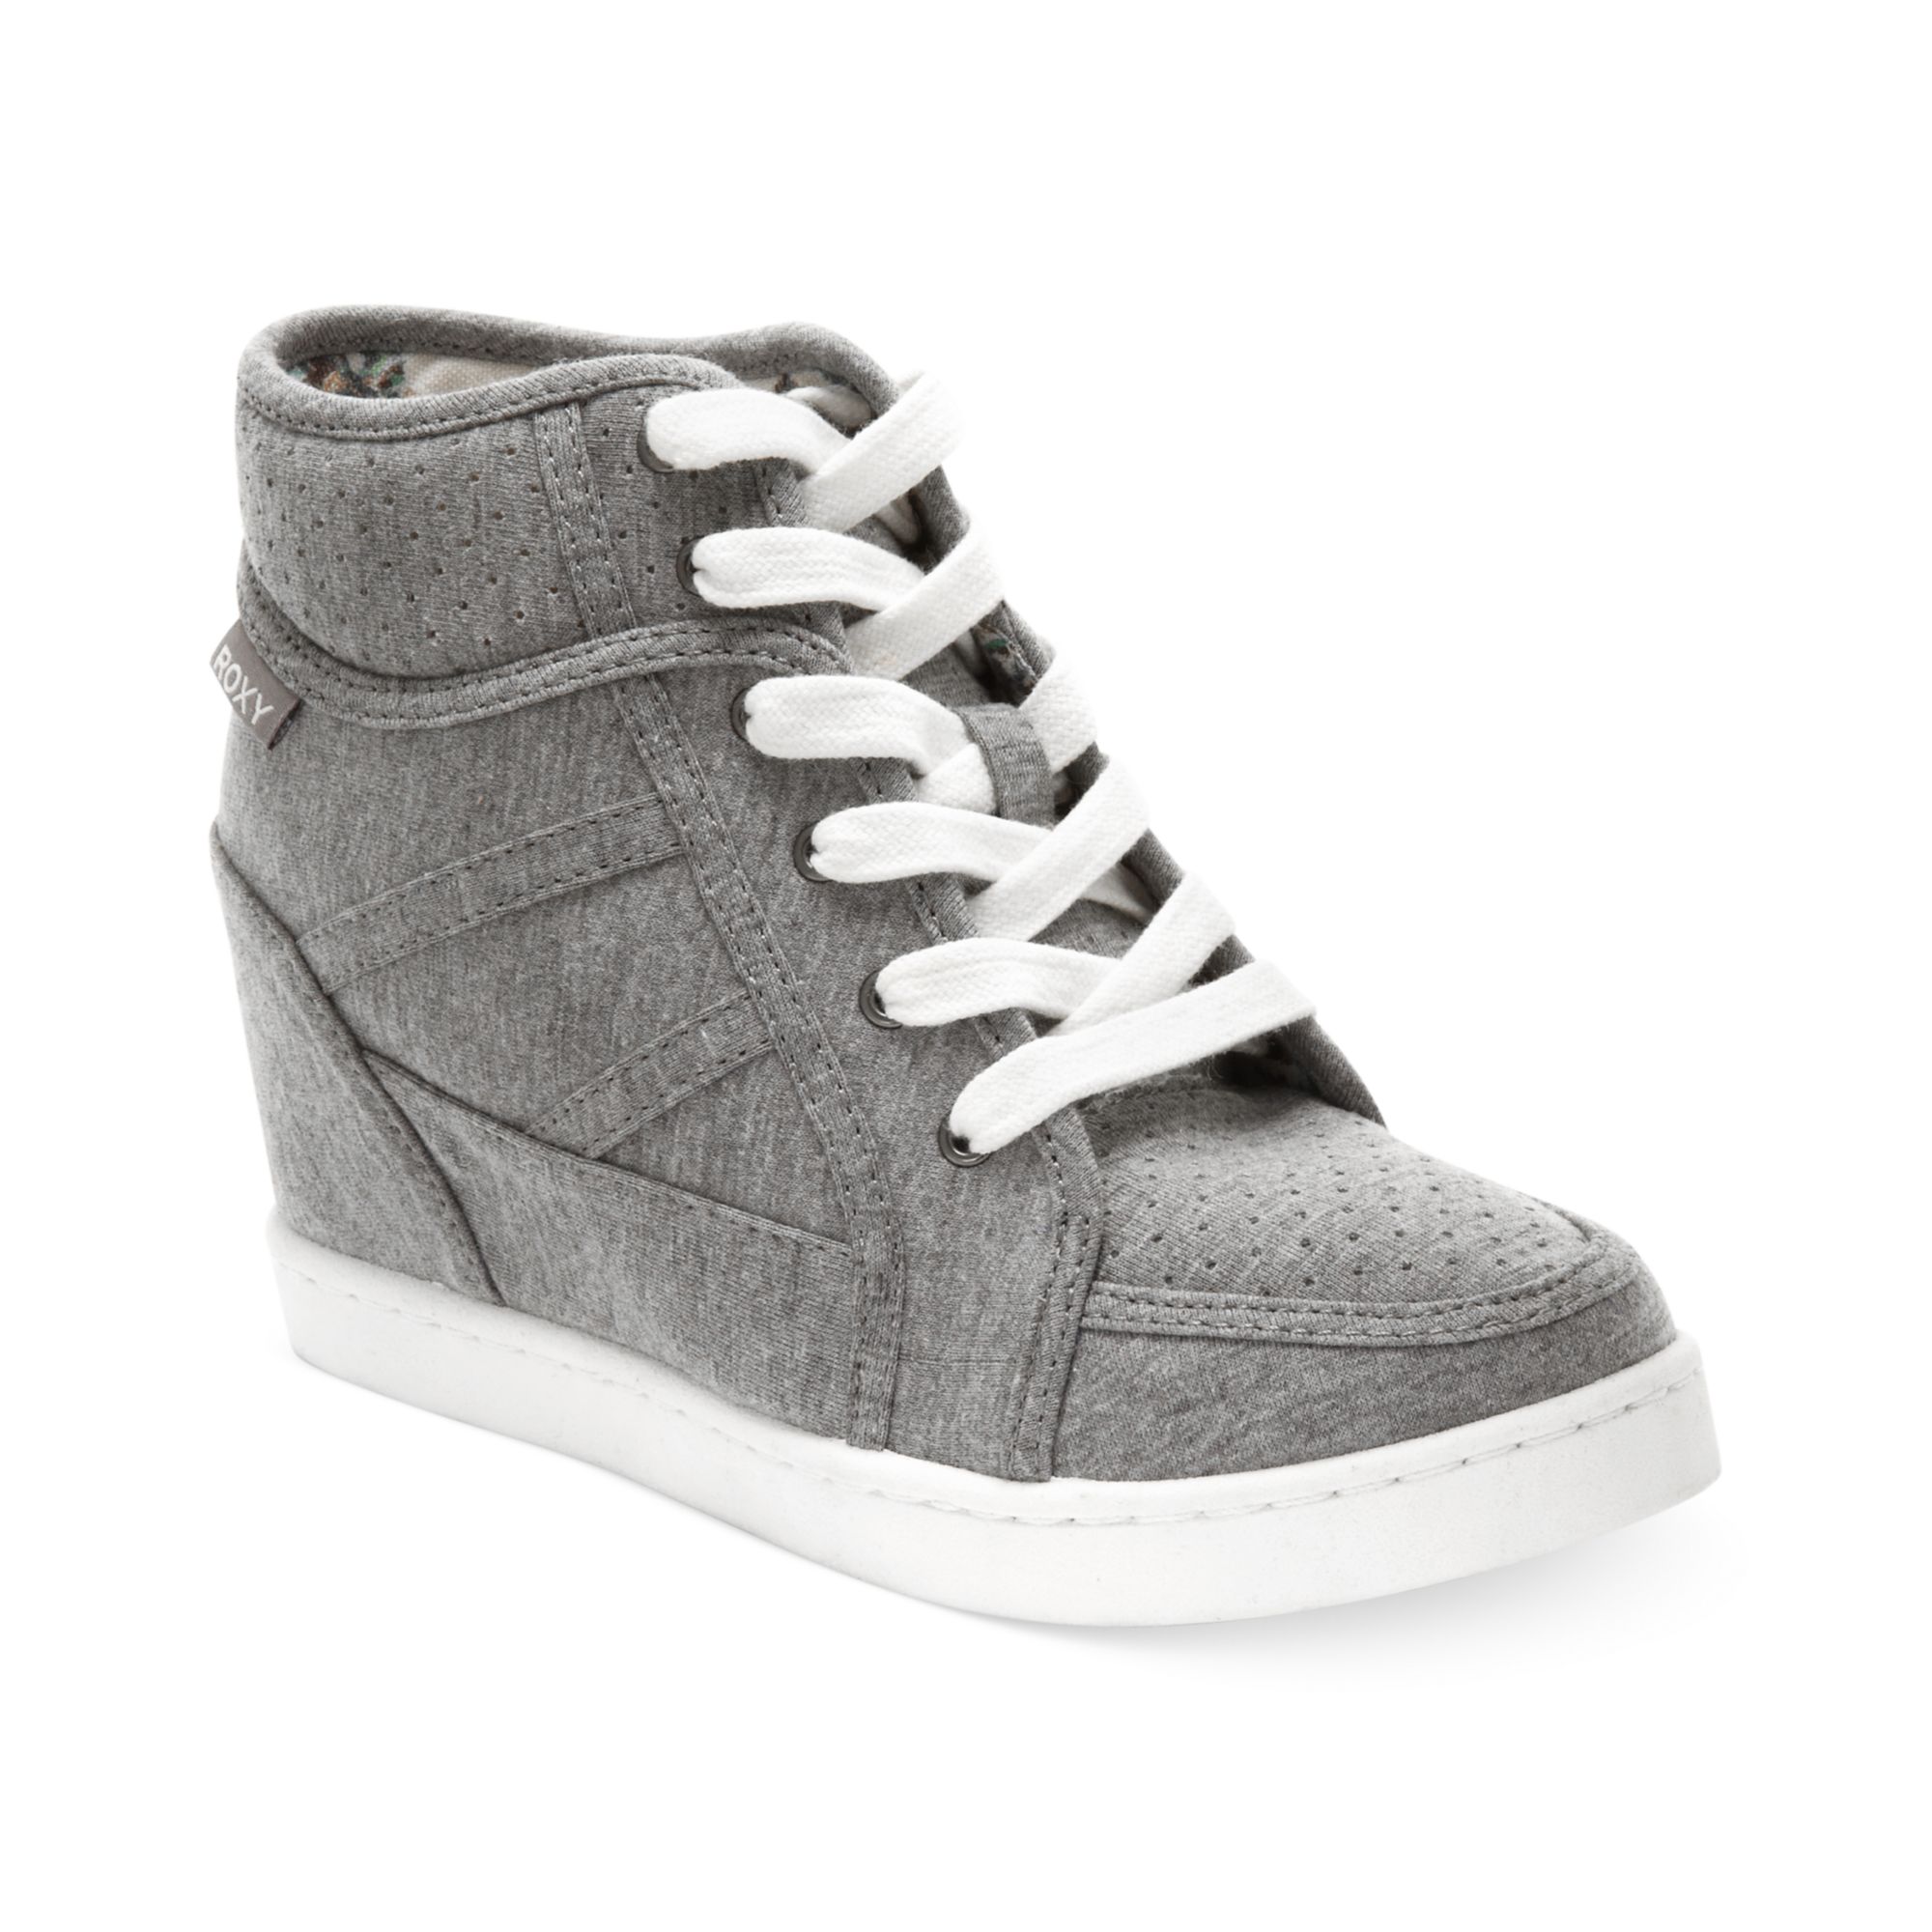 Roxy Alexa Wedge Sneakers in Gray | Lyst